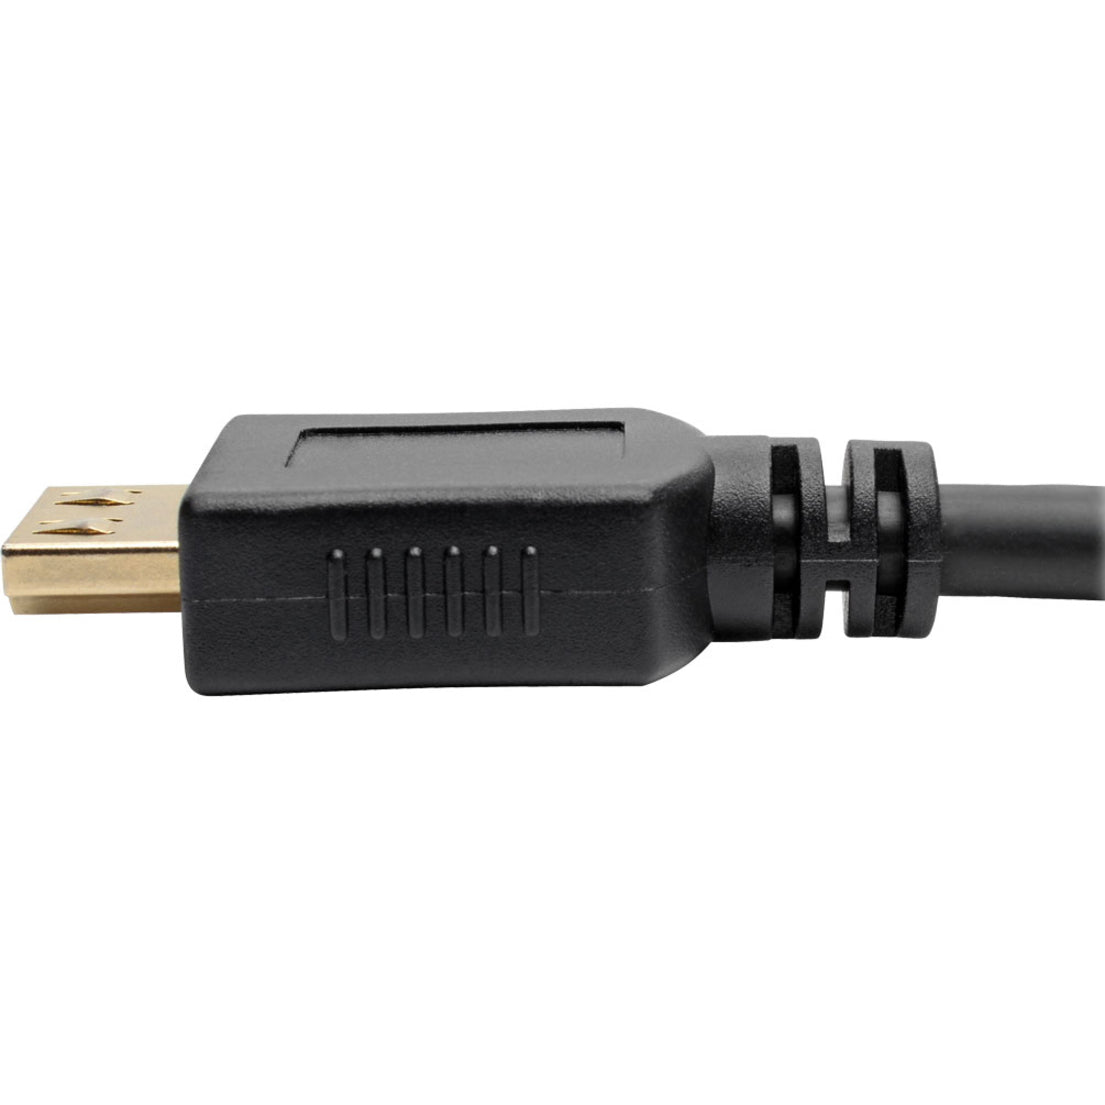 Tripp Lite P568-016-BK-GRP High-Speed HDMI Cable 16 ft. with Gripping Connectors - 4K Black  Tripp Lite P568-016-BK-GRP Cavo HDMI ad alta velocità 16 ft. con connettori aderenti - 4K nero